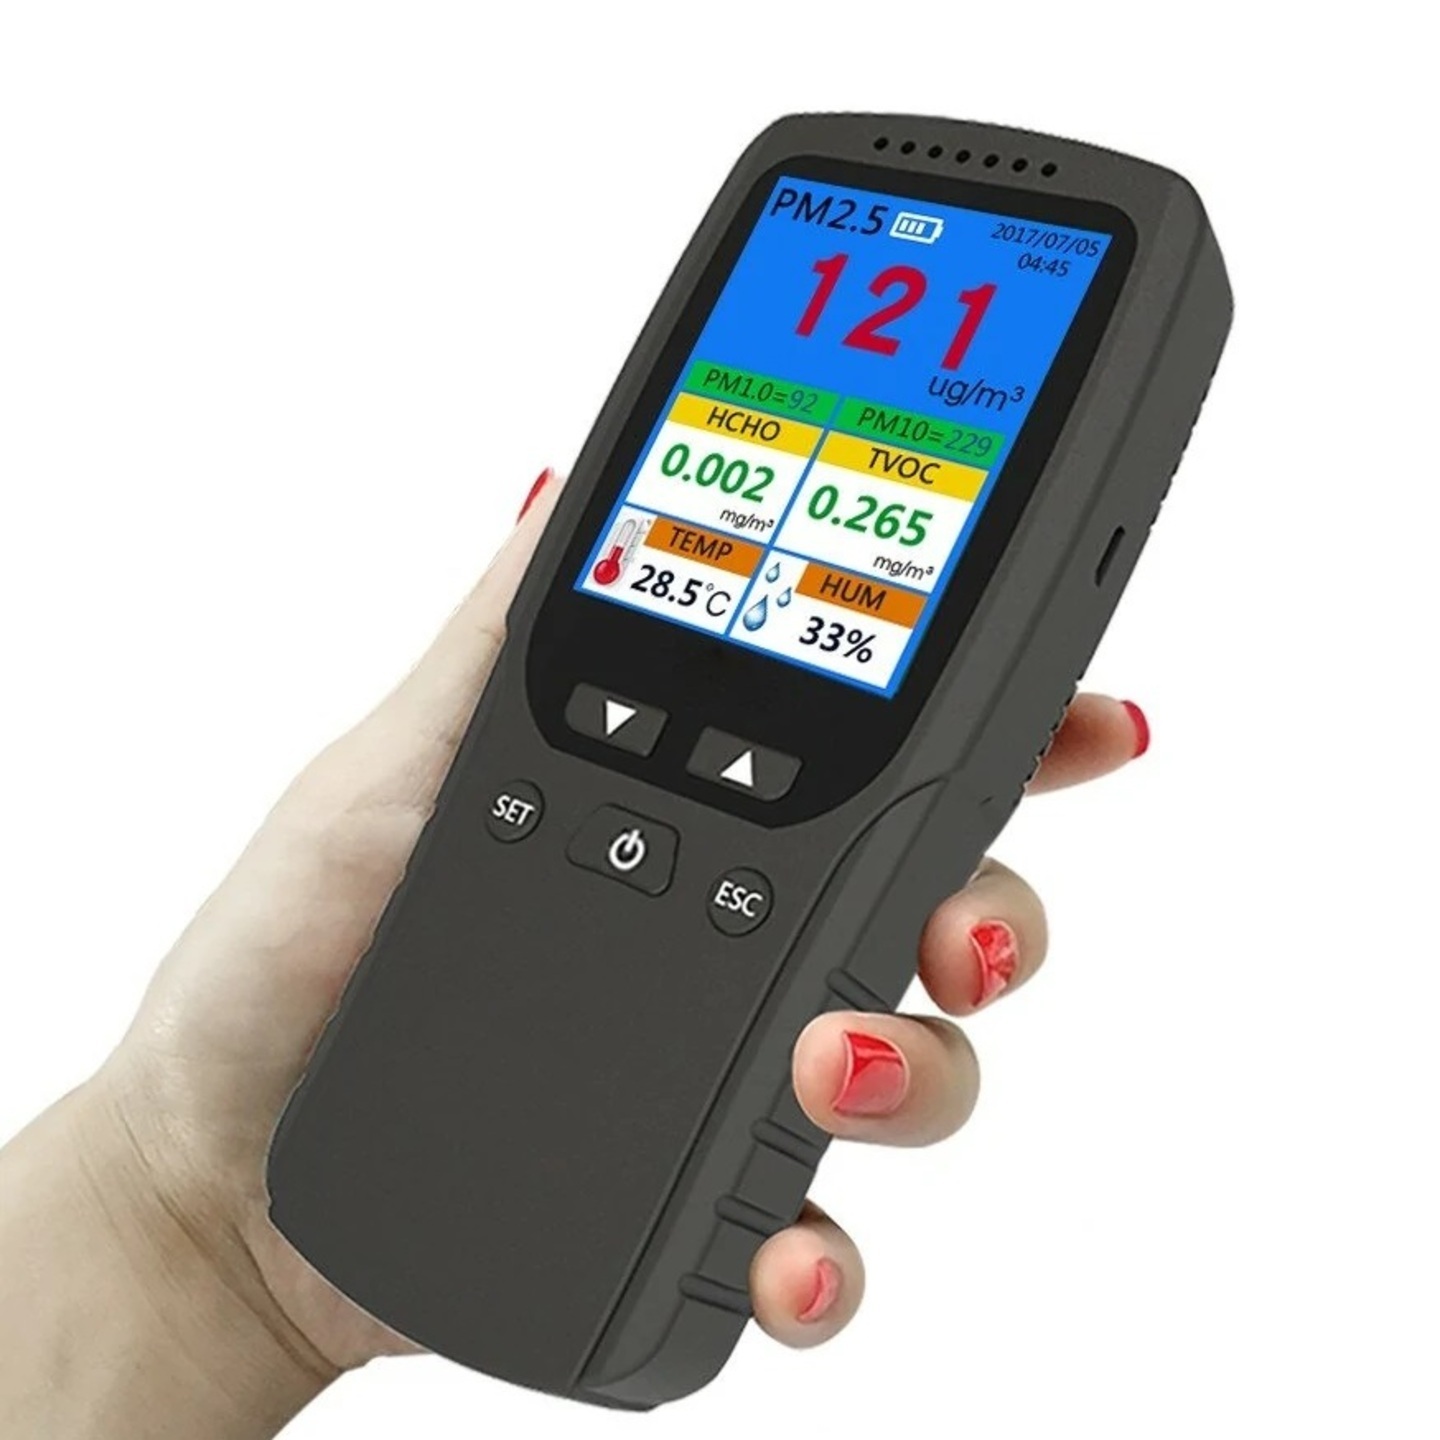 Portable Air Quality Monitor PM 2.5  PM 1.0  PM 10 HCHO  TVOC  AQI  TEMP  HUM